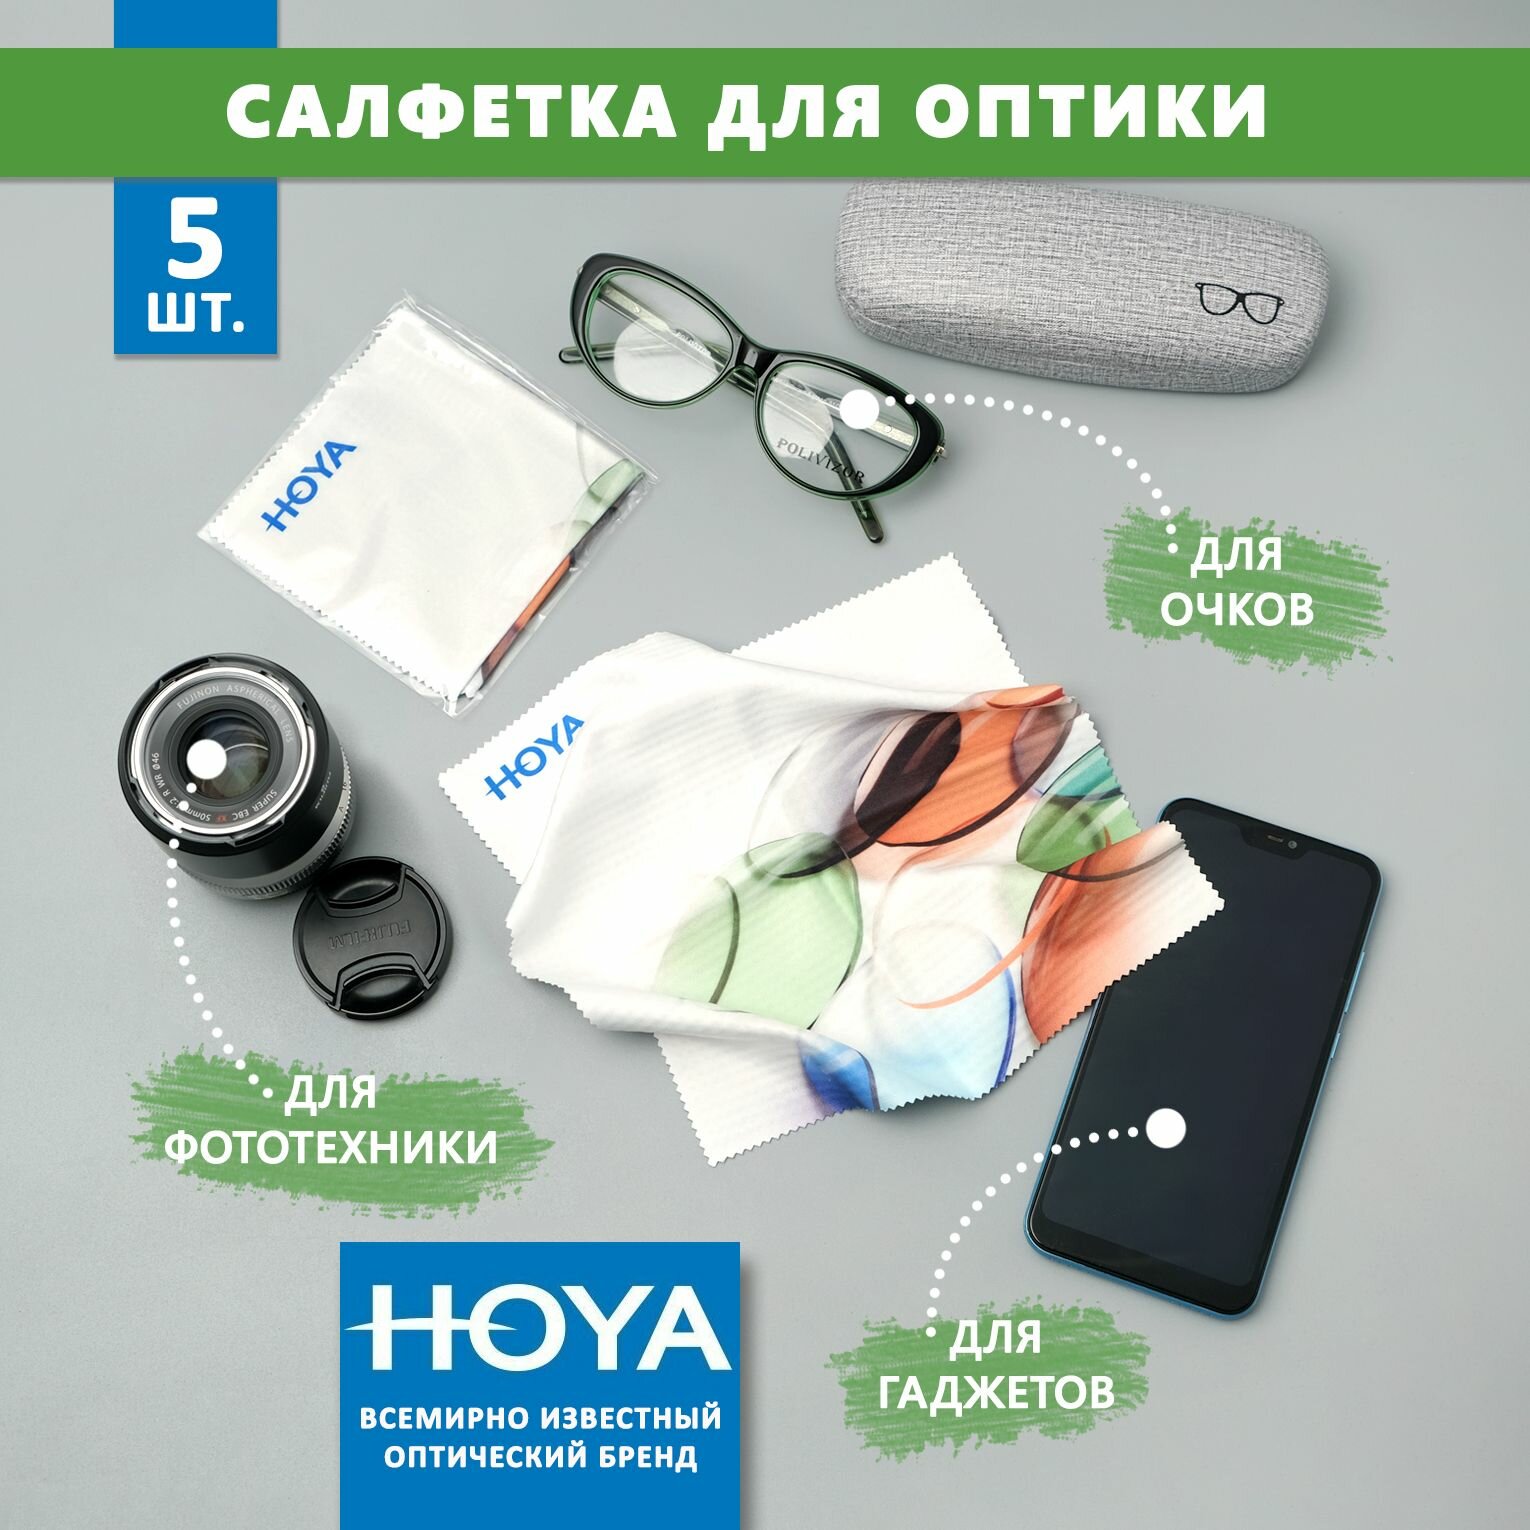 5 Больших фирменных салфеток Hoya с рисунком для протирки очков, уходом за сотовыми телефонами электронными гаджетами и объективами фотоаппаратов.